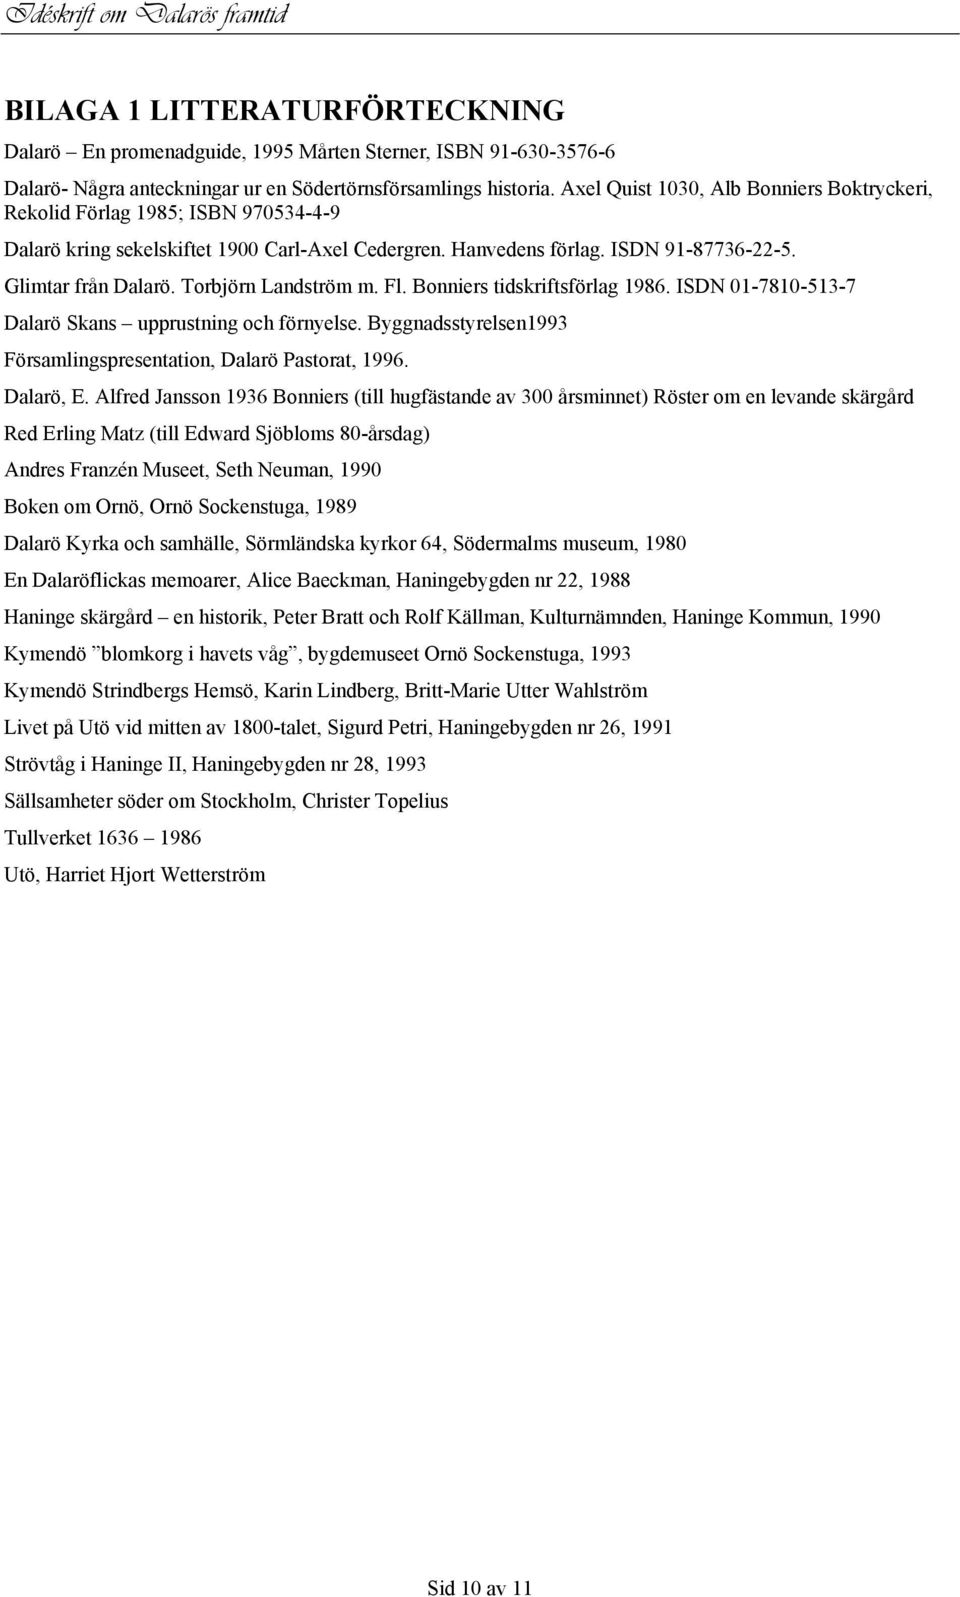 Torbjörn Landström m. Fl. Bonniers tidskriftsförlag 1986. ISDN 01-7810-513-7 Dalarö Skans upprustning och förnyelse. Byggnadsstyrelsen1993 Församlingspresentation, Dalarö Pastorat, 1996. Dalarö, E.